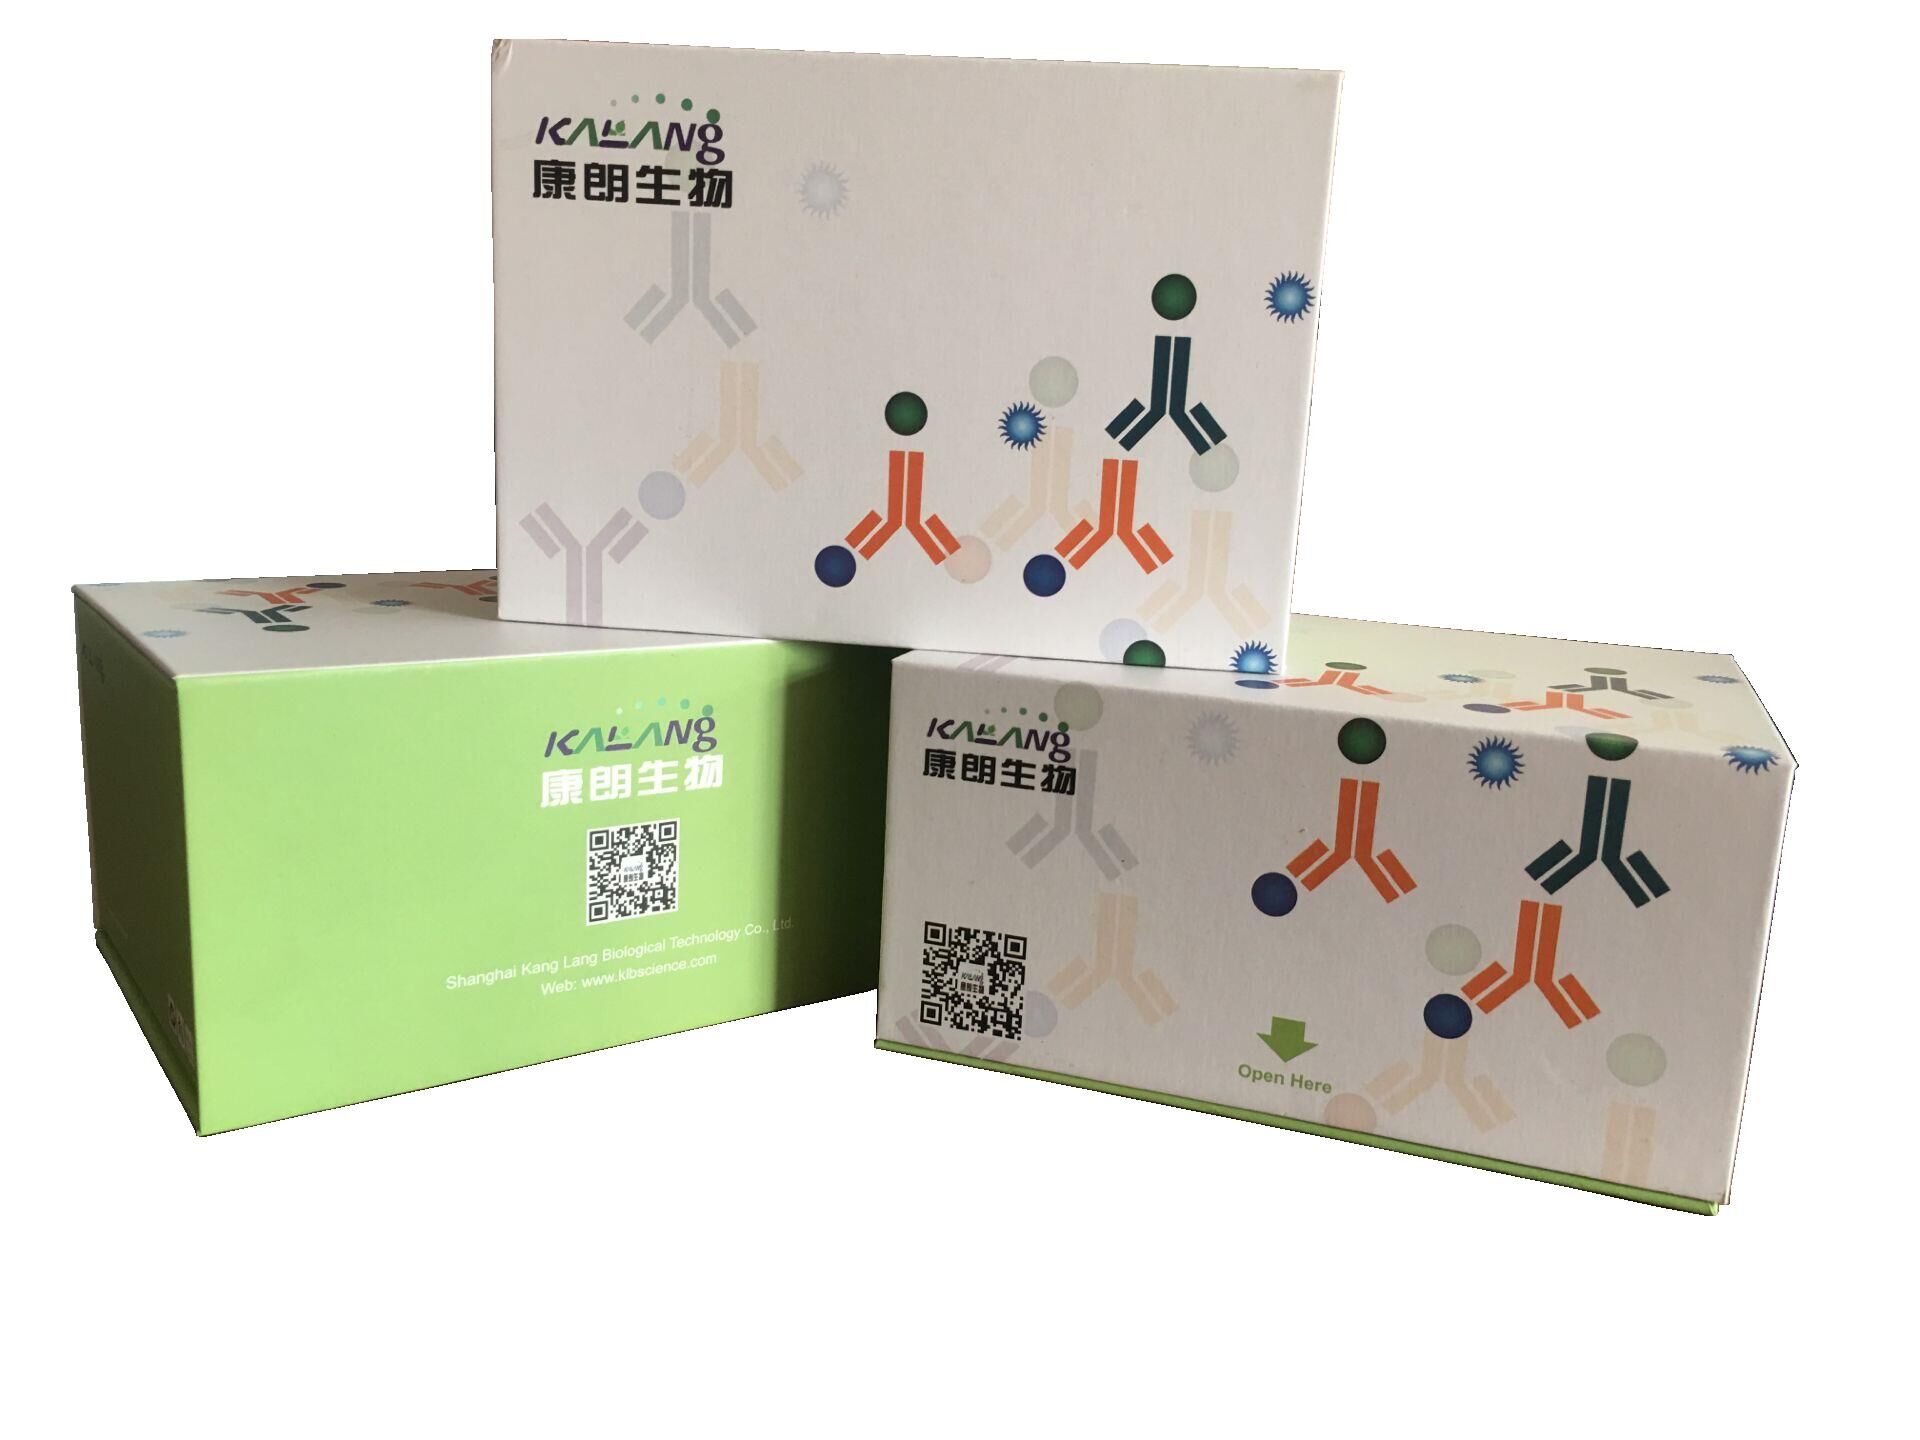 人催乳素酶联免疫试剂盒